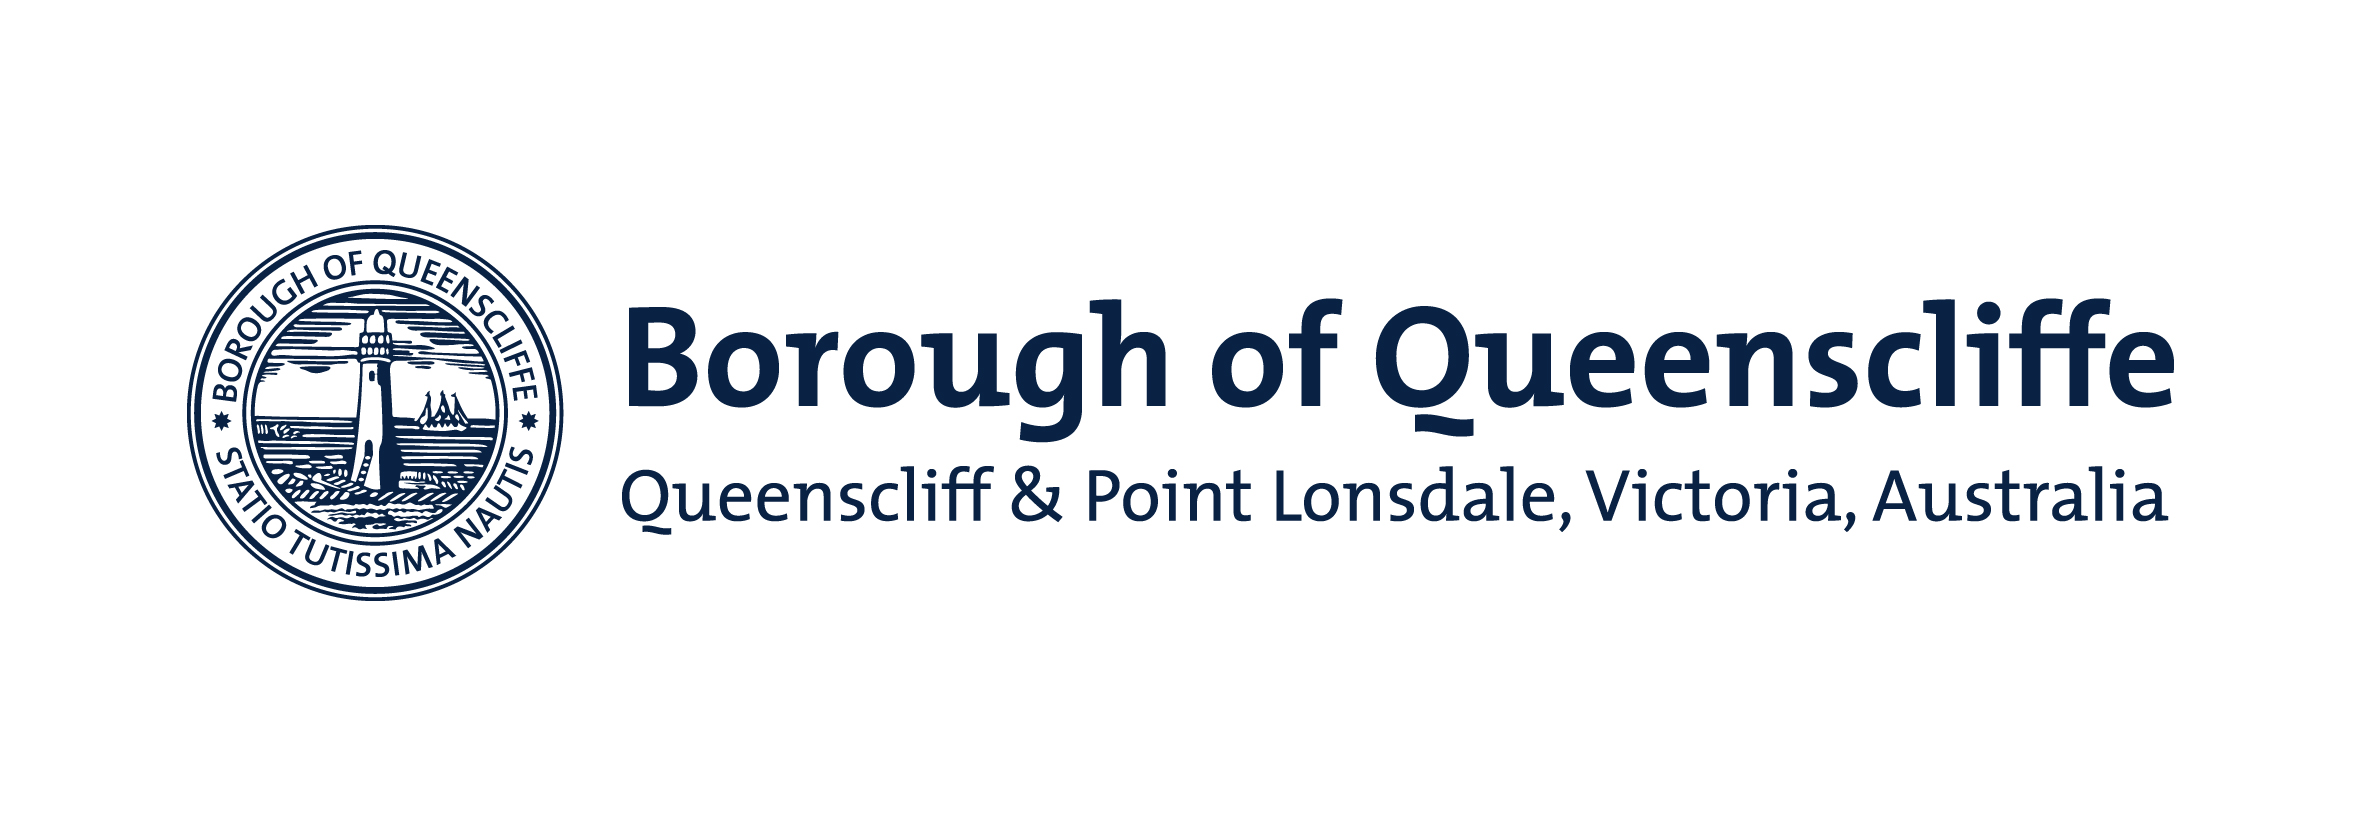 Copy of Borough of Queenscliffe logo